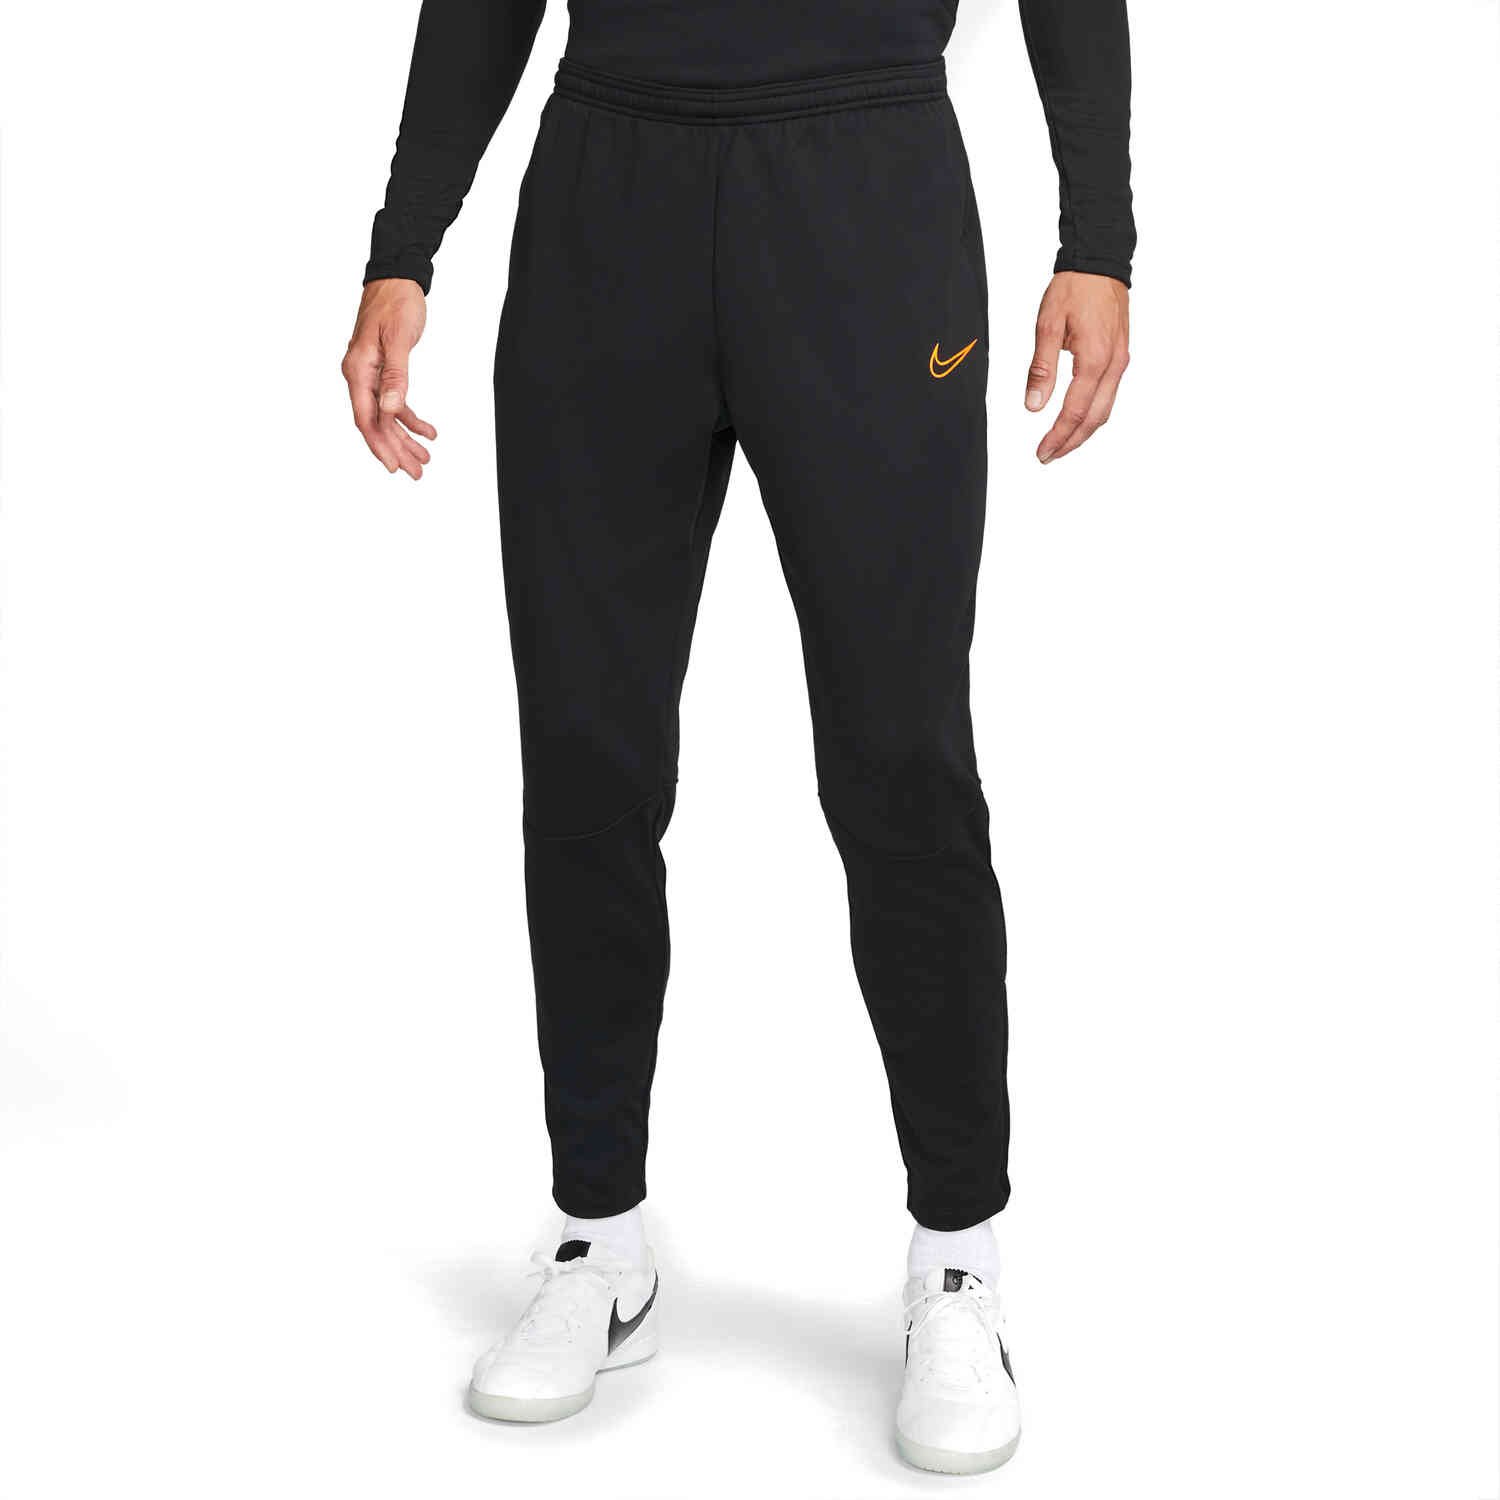 Creatie verraad Interpretatief Nike Winter Warrior Academy Training Pants - Black/Total Orange - SoccerPro